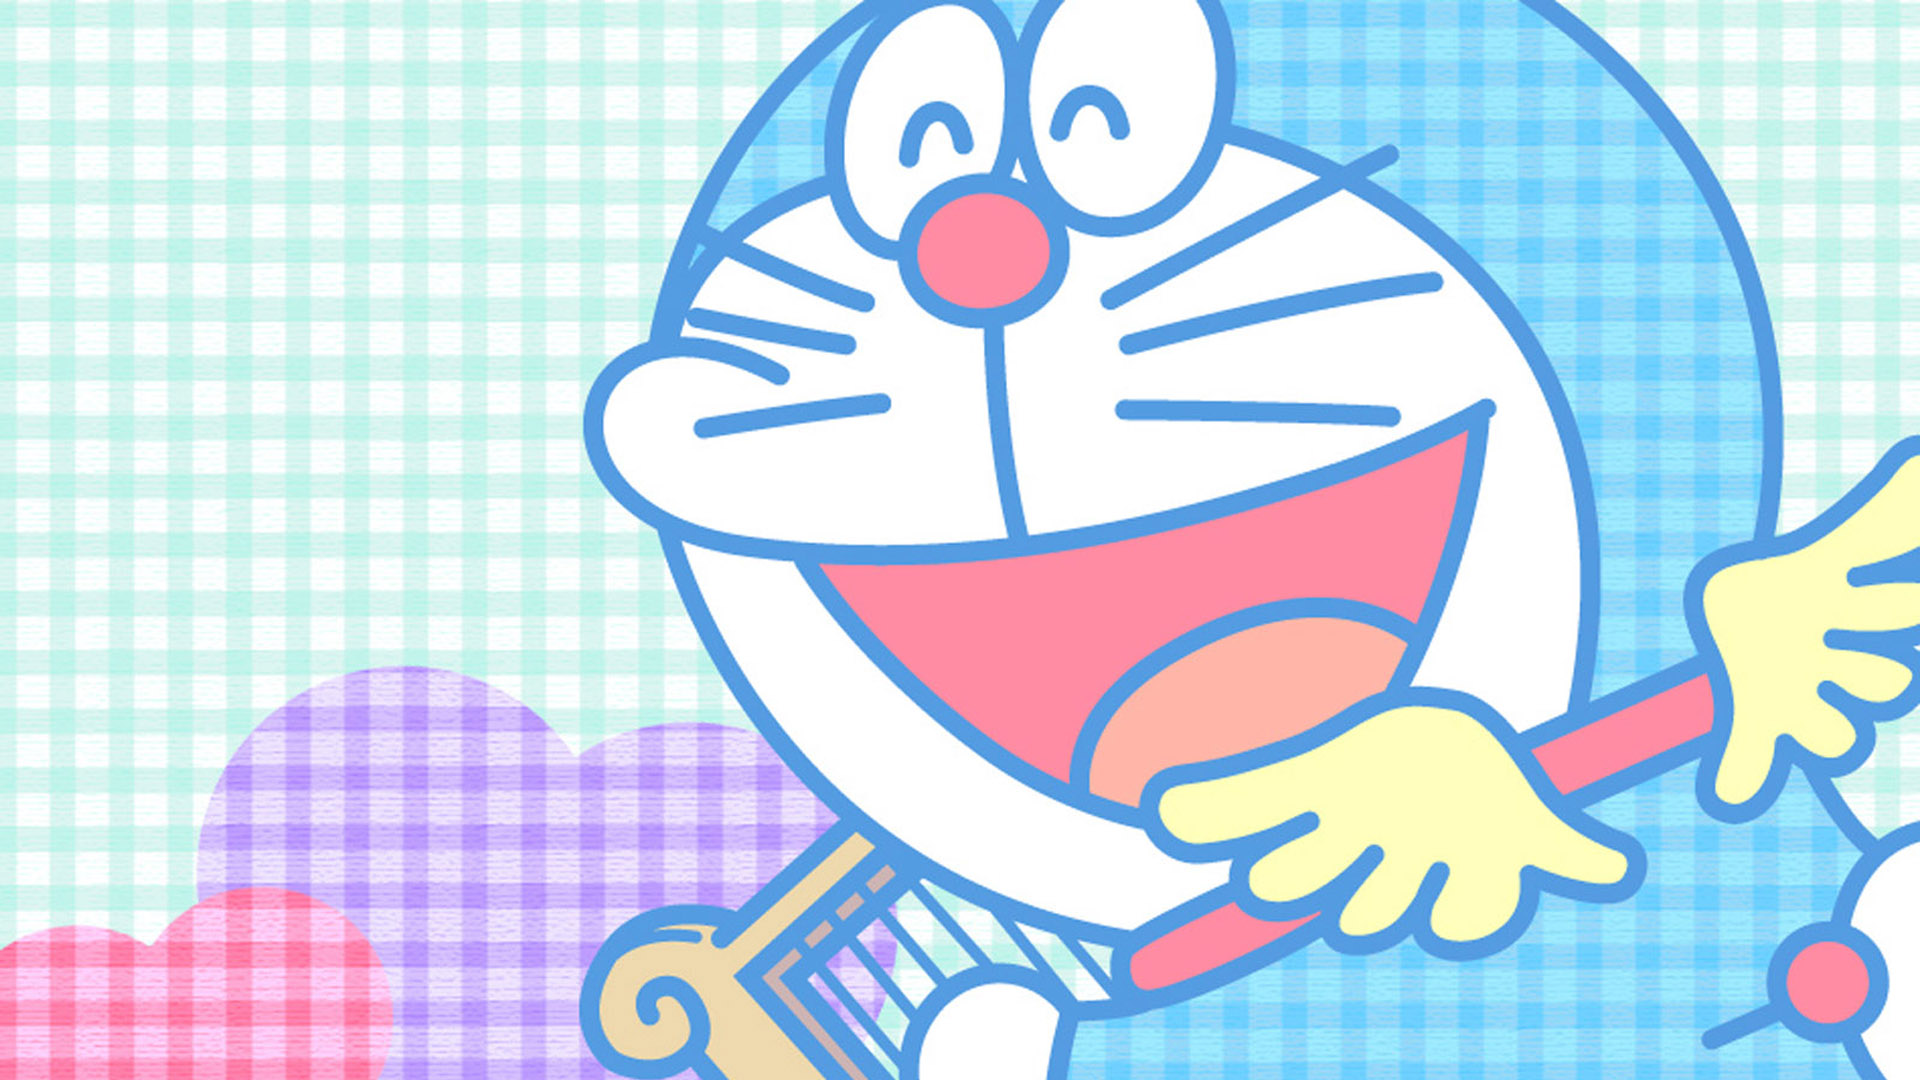 Tìm kiếm và tải hình nền Doraemon đẹp nhất, miễn phí và dễ dàng? Khám phá ngay bộ sưu tập hình nền Doraemon đa dạng và phong phú hơn bao giờ hết! Tất cả những hình ảnh độc đáo và đẹp mắt đều có sẵn để tải xuống và sử dụng ngay lập tức. Hãy biến màn hình của bạn trở nên sinh động và đáng yêu hơn bao giờ hết.